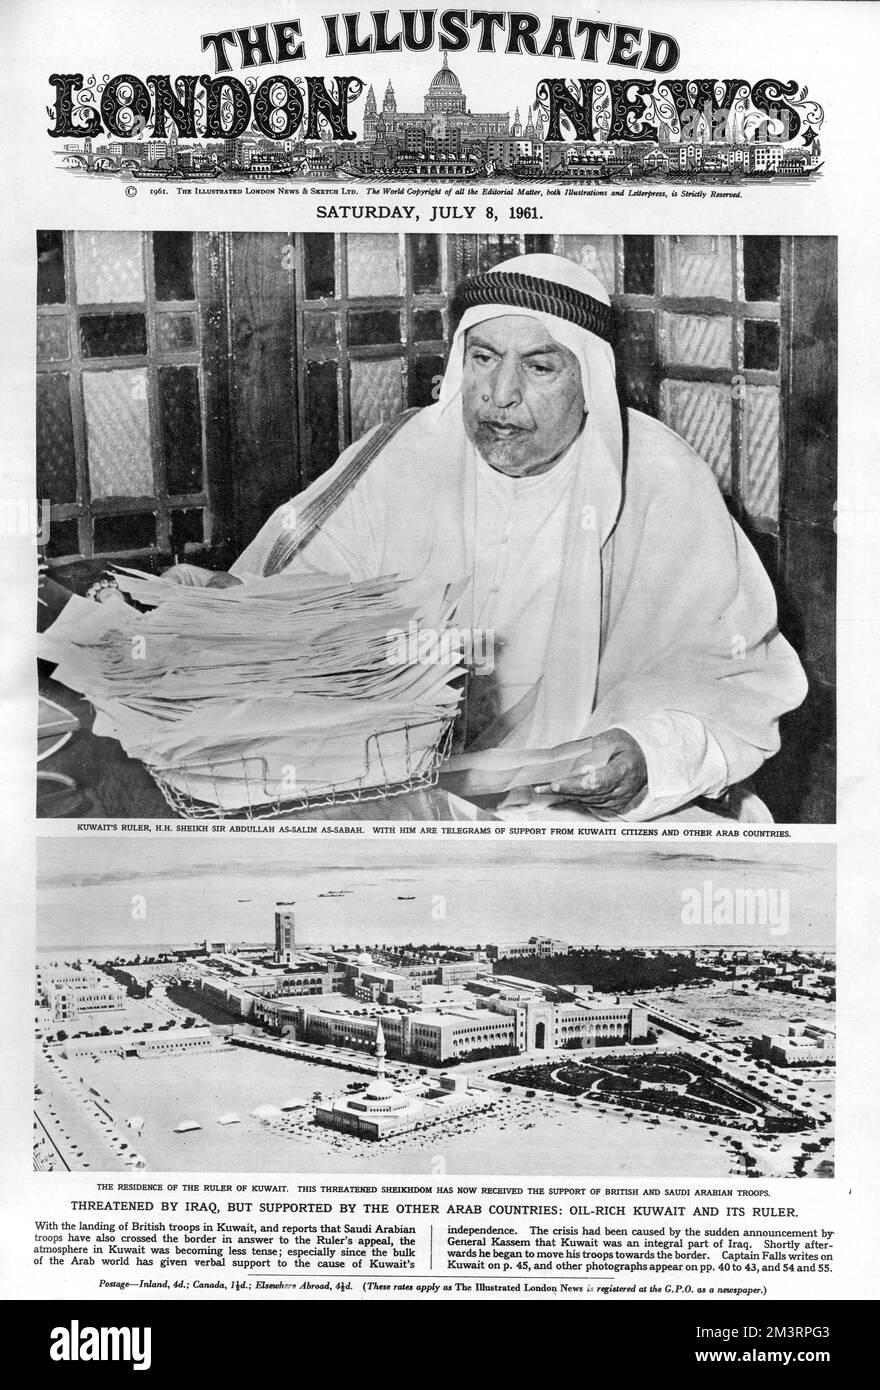 Titelseite der illustrierten London News mit dem Herrscher von Kuwait, H. H. H. Sheikh Sir Abdullah AS-Salim AS-Sabah, mit Telegrammen zur Unterstützung kuwaitischer Bürger und anderer arabischer Länder angesichts der Feindseligkeiten von General Kassem aus Irak, der Anspruch auf den Staat erhob. Datum: 1961 Stockfoto